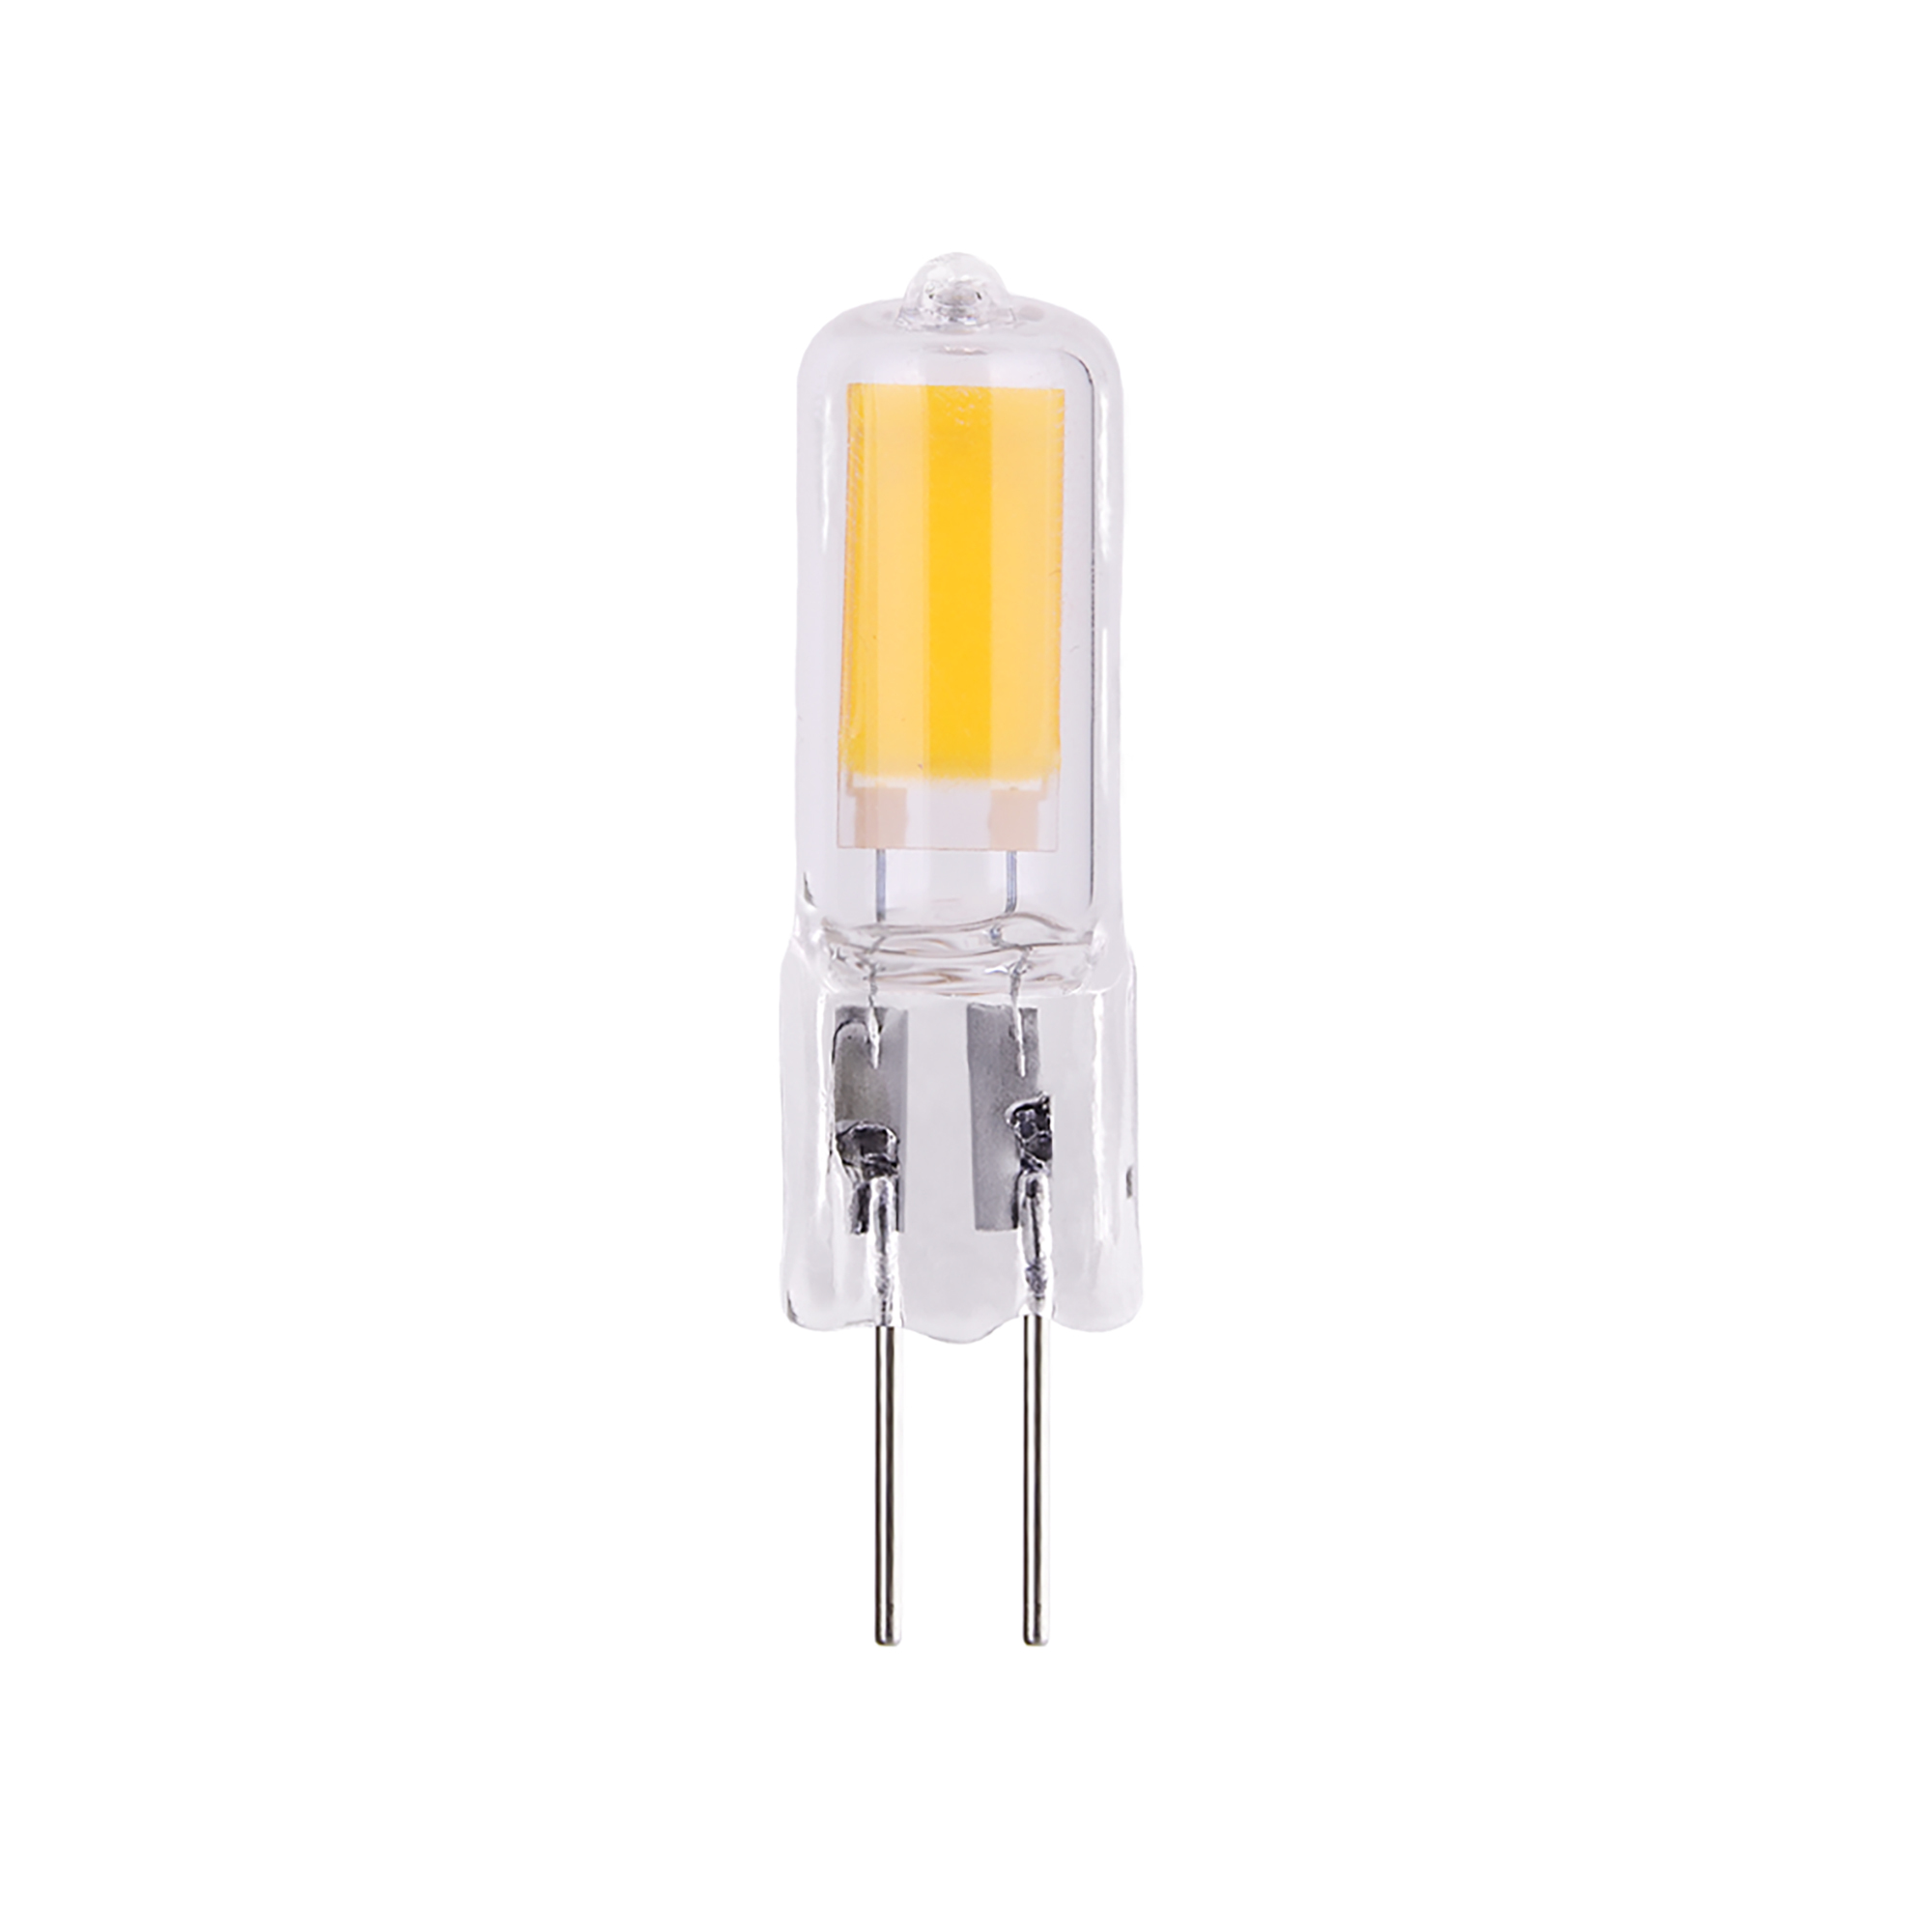 Лампа светодиодная Elektrostandard G4 JCD 5 Вт 6500К холодный свет 220 В капсула (BLG421)